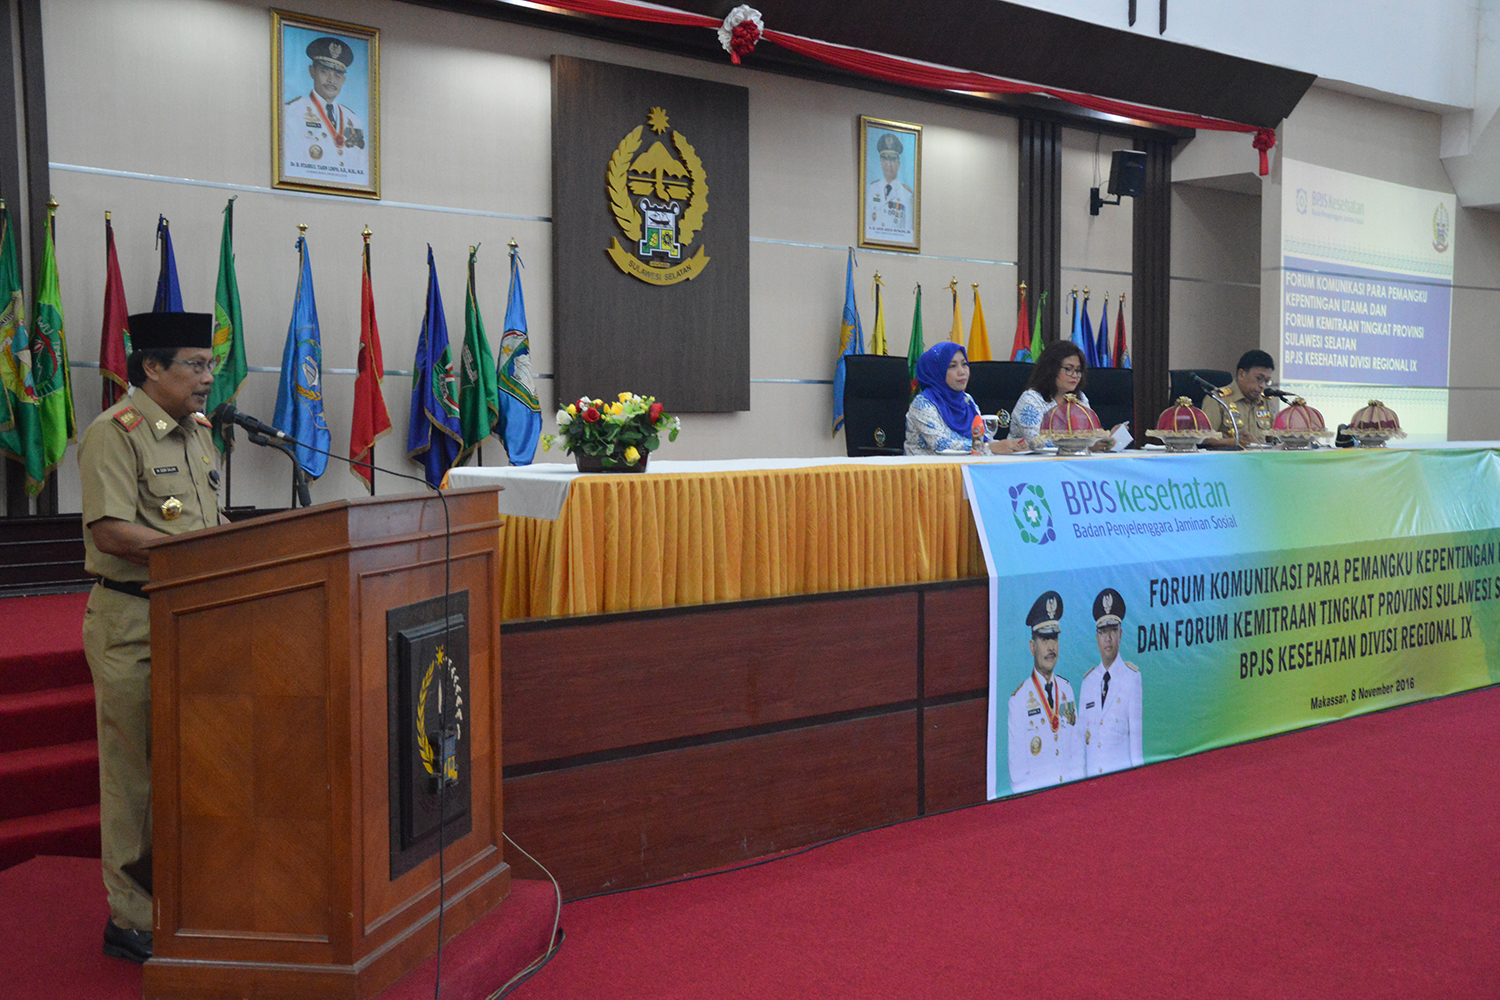 Forum Komunikasi Para Pemangku Kepentingan Utama dan Forum Kemitraan Tk Prov. Sulsel BPJS Kesehatan Divisi Regional IX